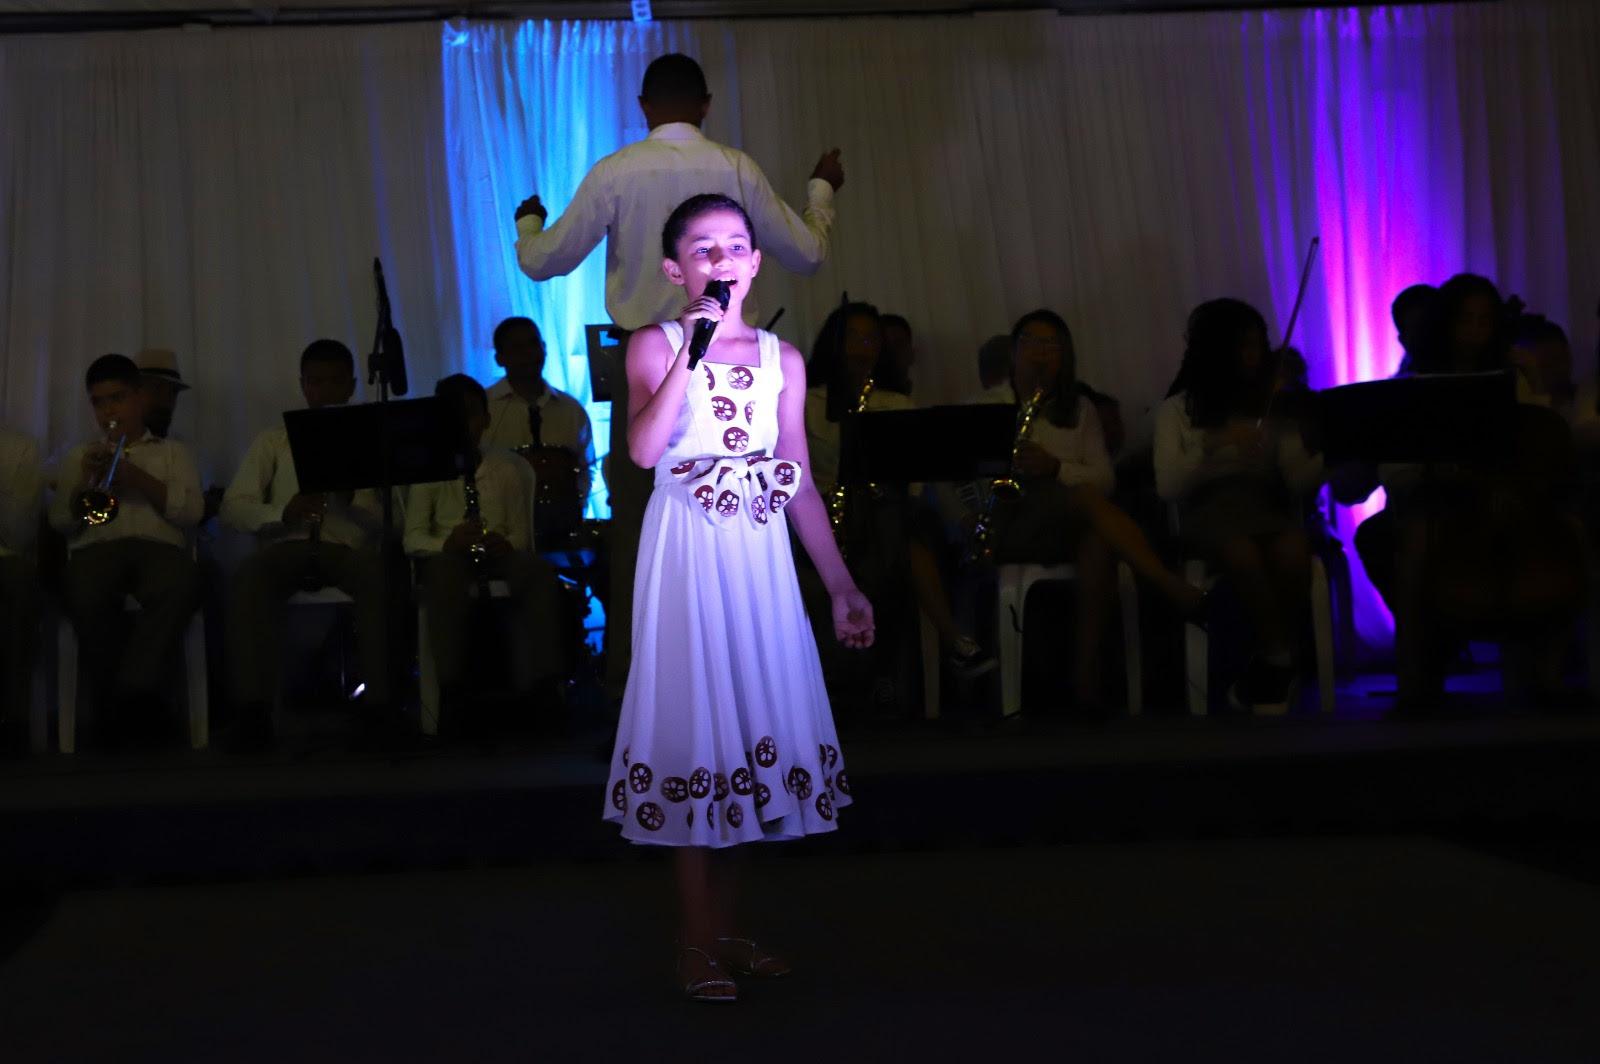 “Eu amei esse vestido, ele é muito bonito e gostei muito de me apresentar vestindo ele”, disse Izabela Marquezine, de nove anos, que também cantou durante o evento.